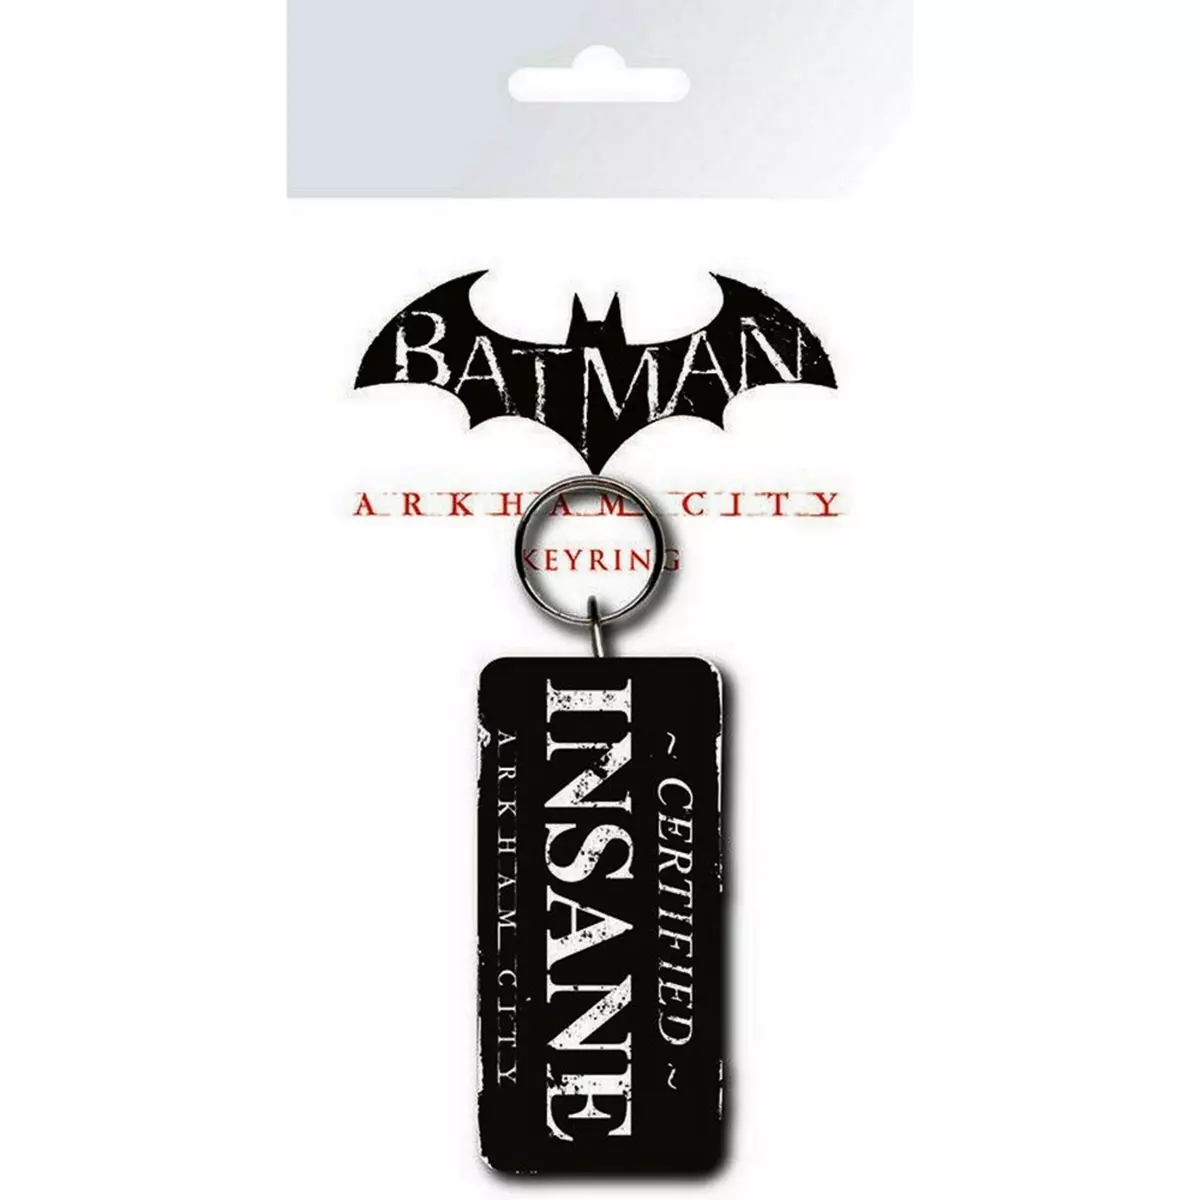  Porte-clés Batman Arkham City Certified Insane